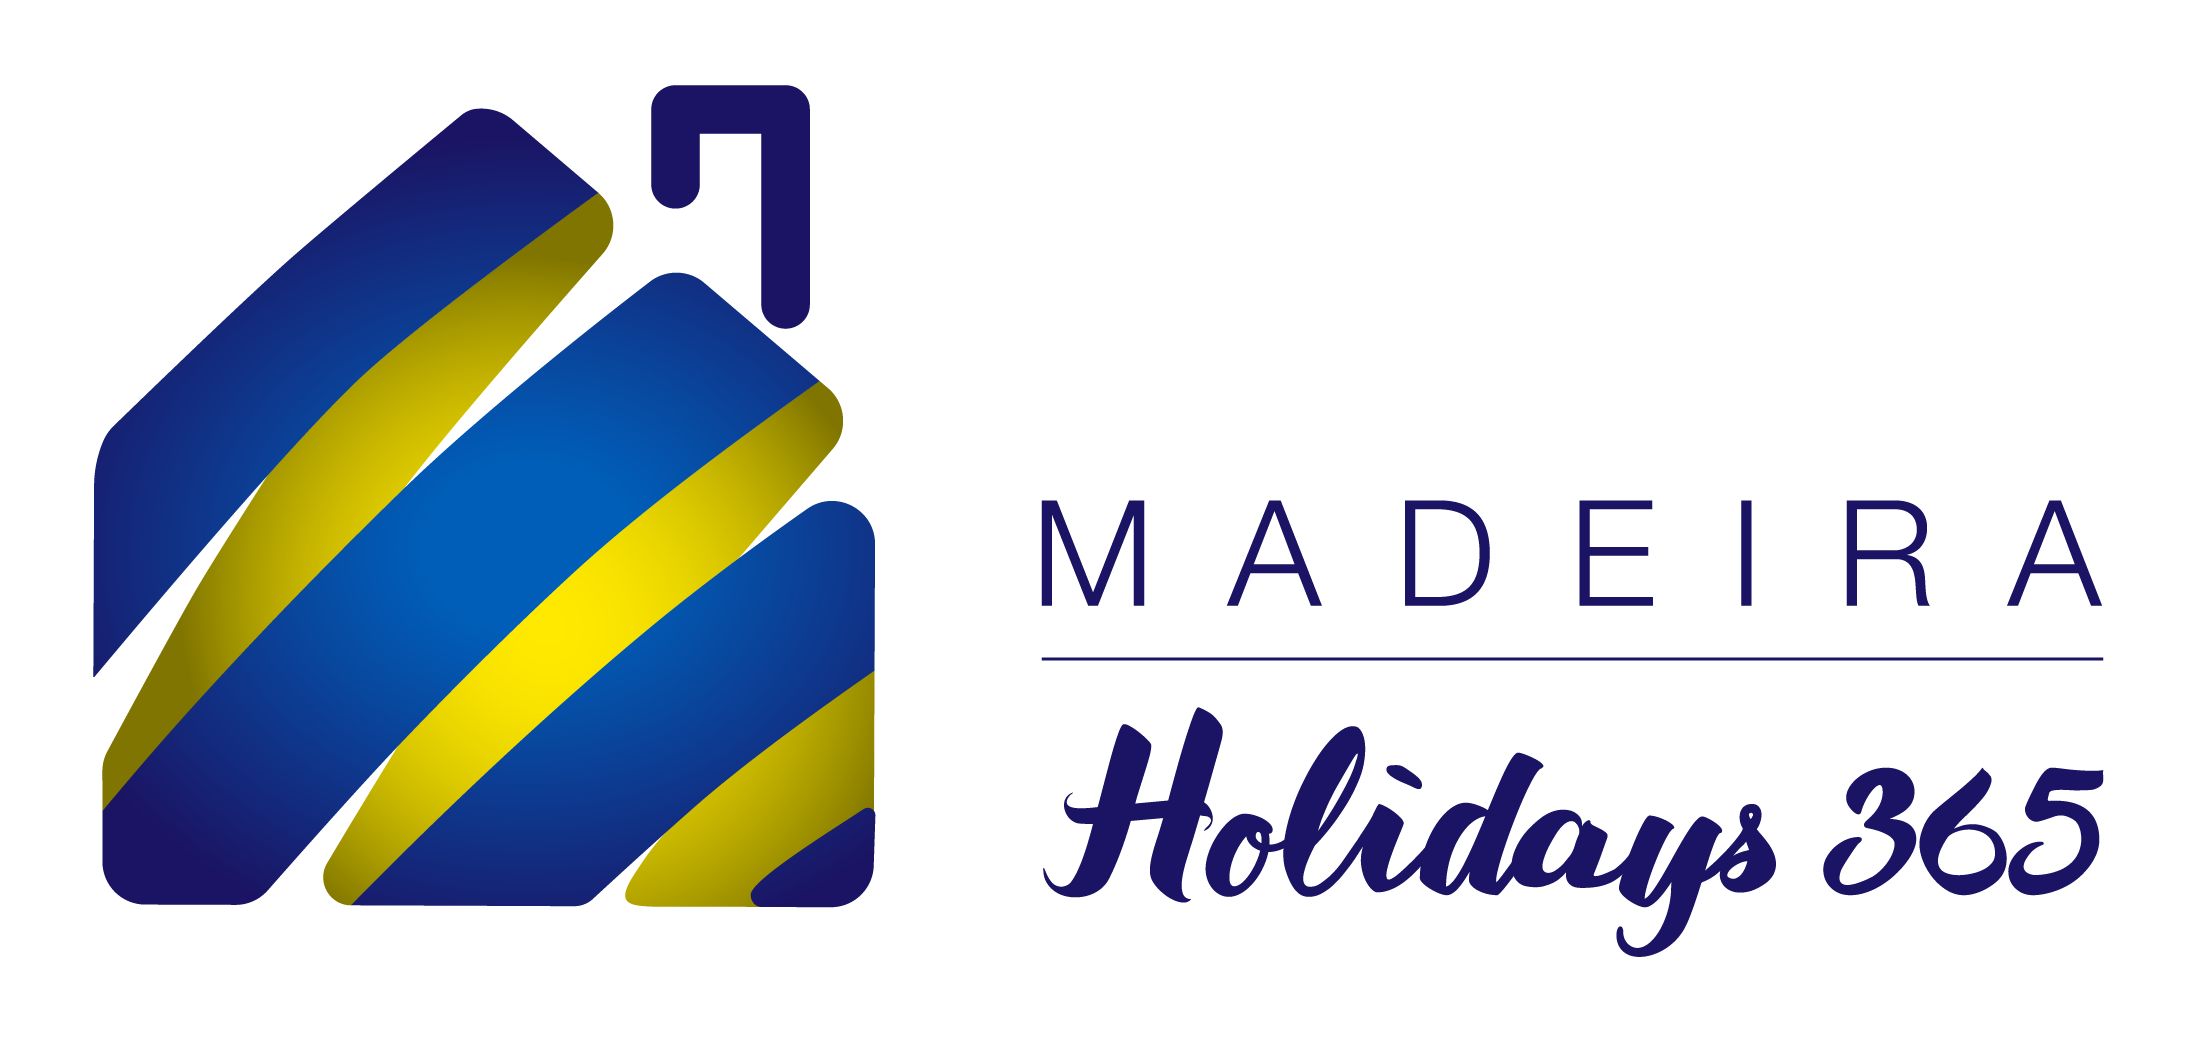 Madeira Holidays 365